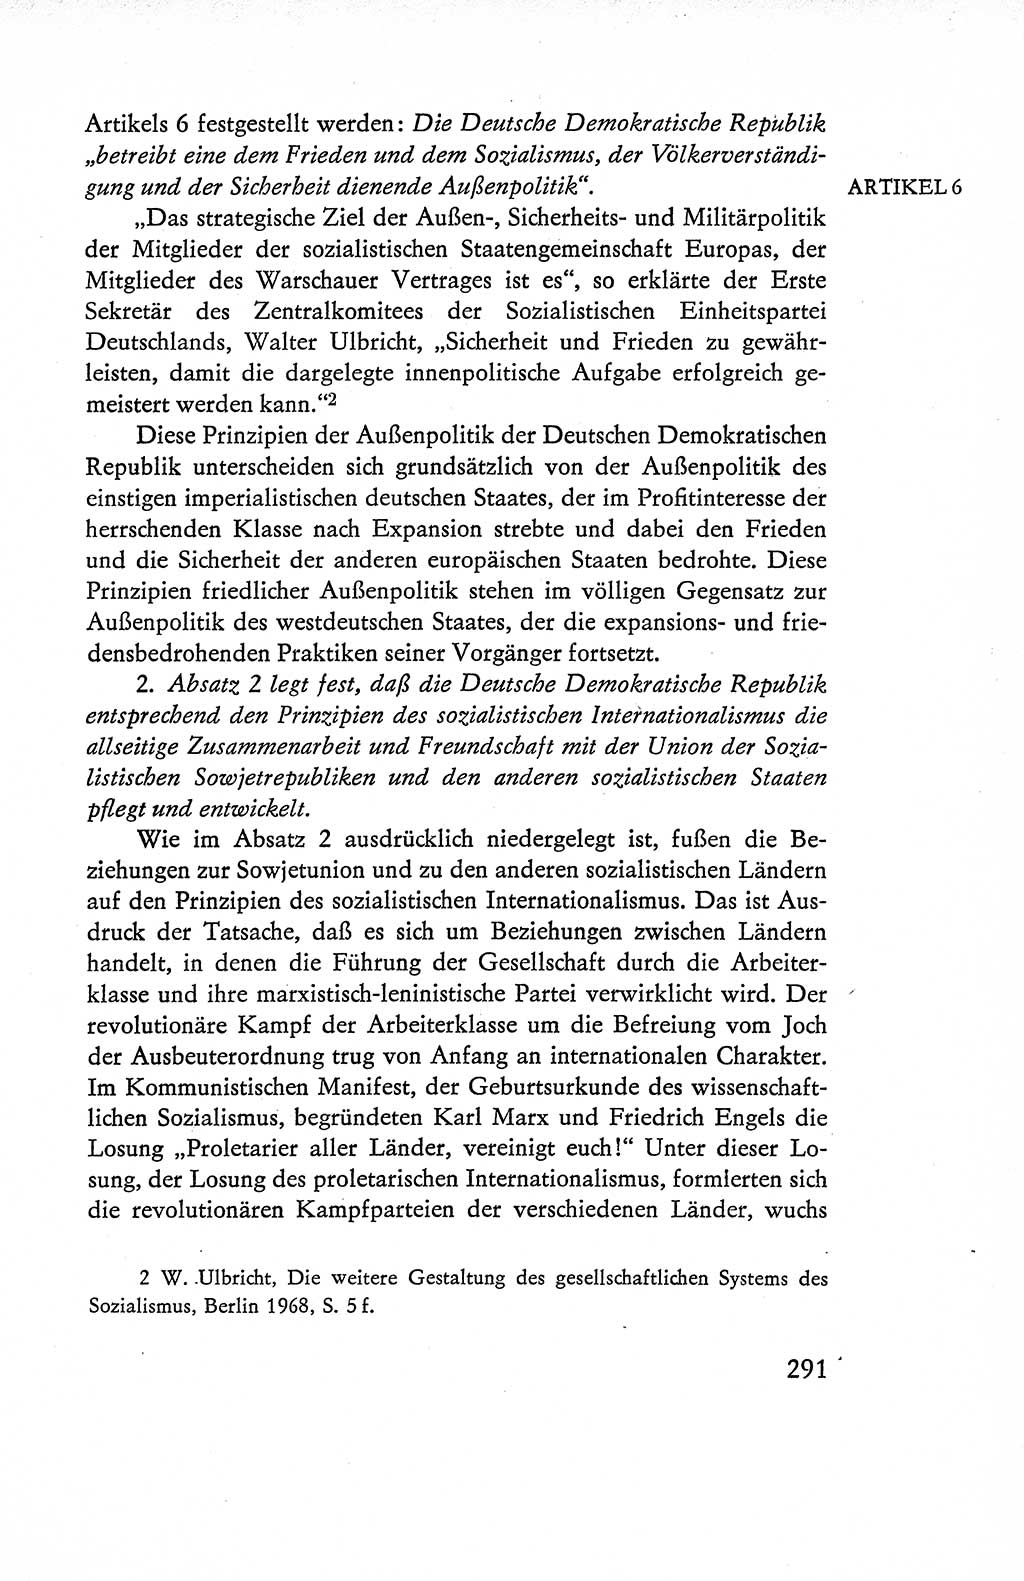 Verfassung der Deutschen Demokratischen Republik (DDR), Dokumente, Kommentar 1969, Band 1, Seite 291 (Verf. DDR Dok. Komm. 1969, Bd. 1, S. 291)